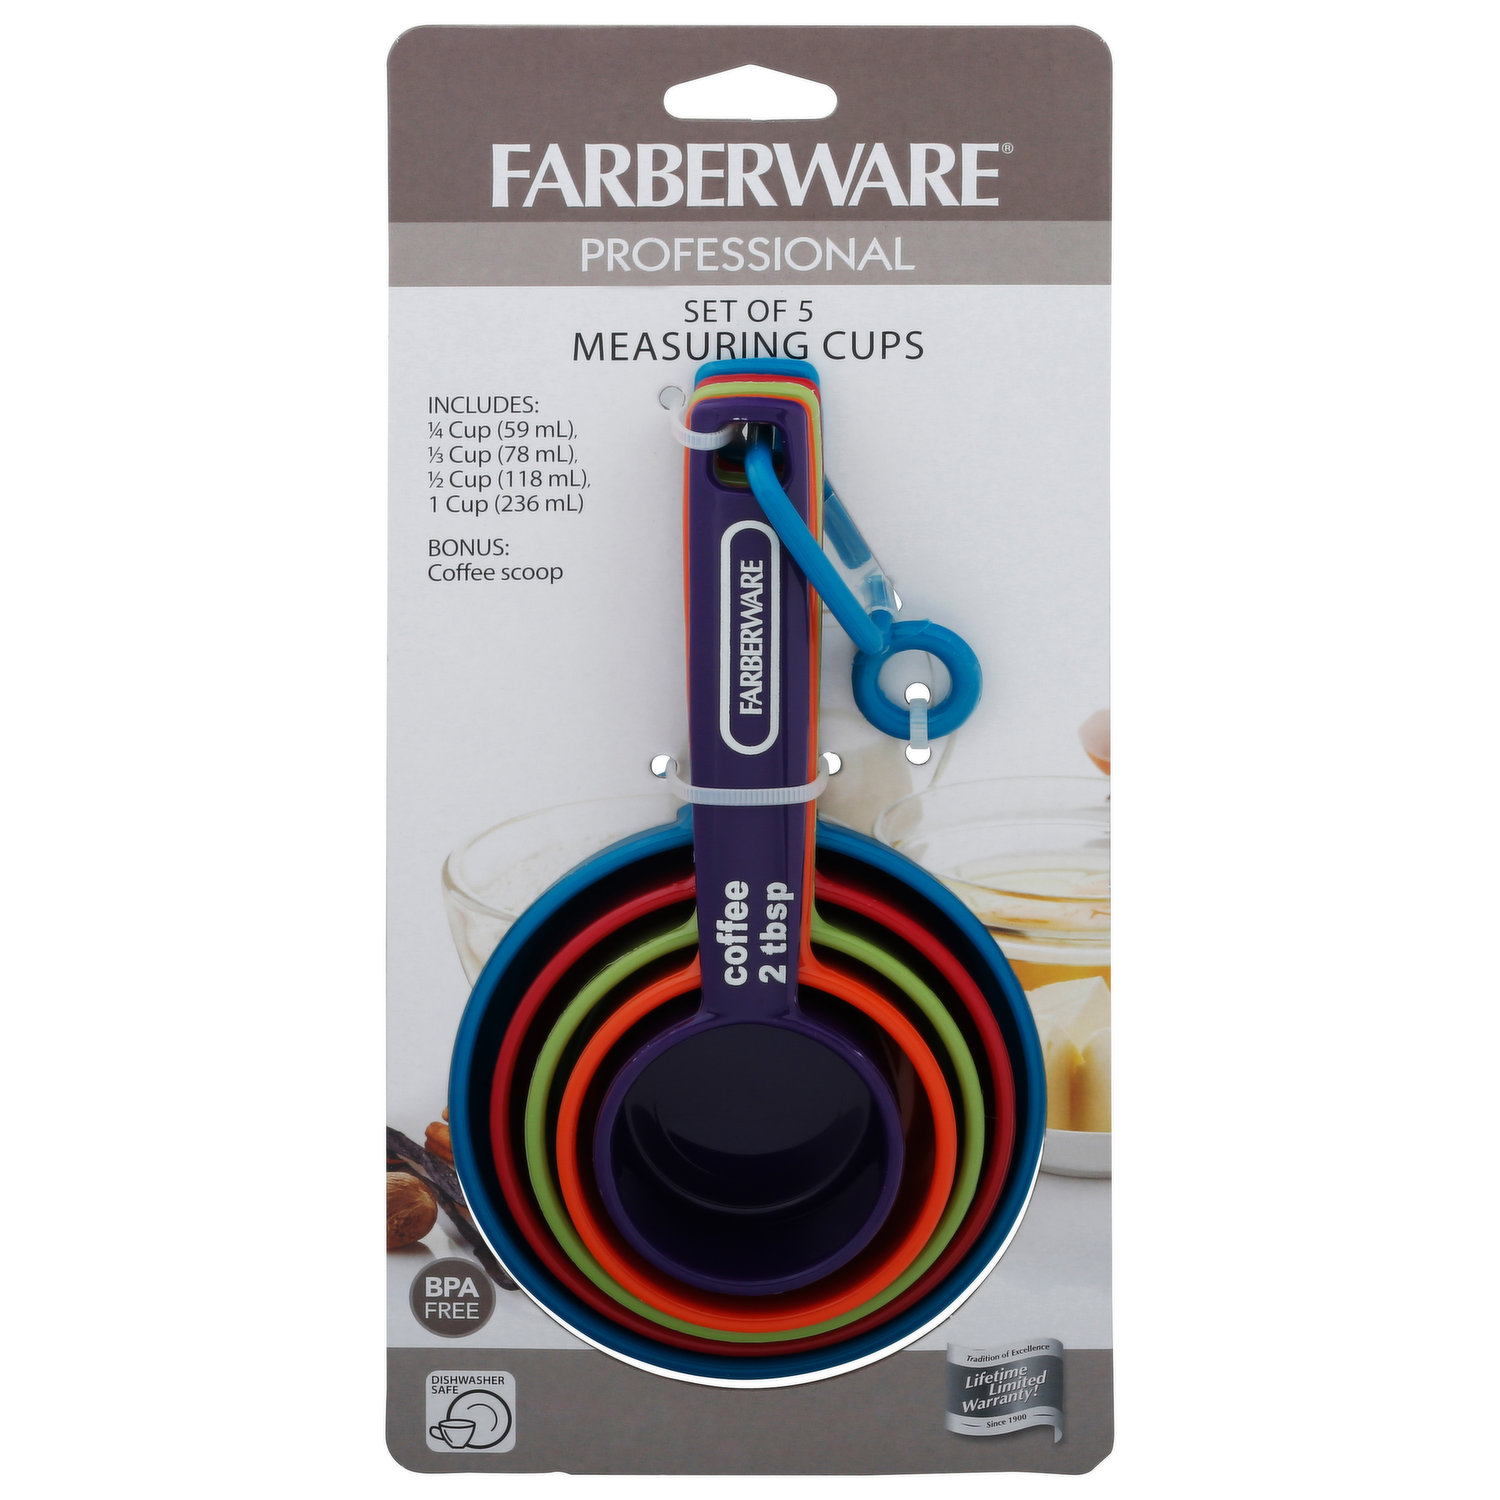 Farberware Measuring Cups, Professional